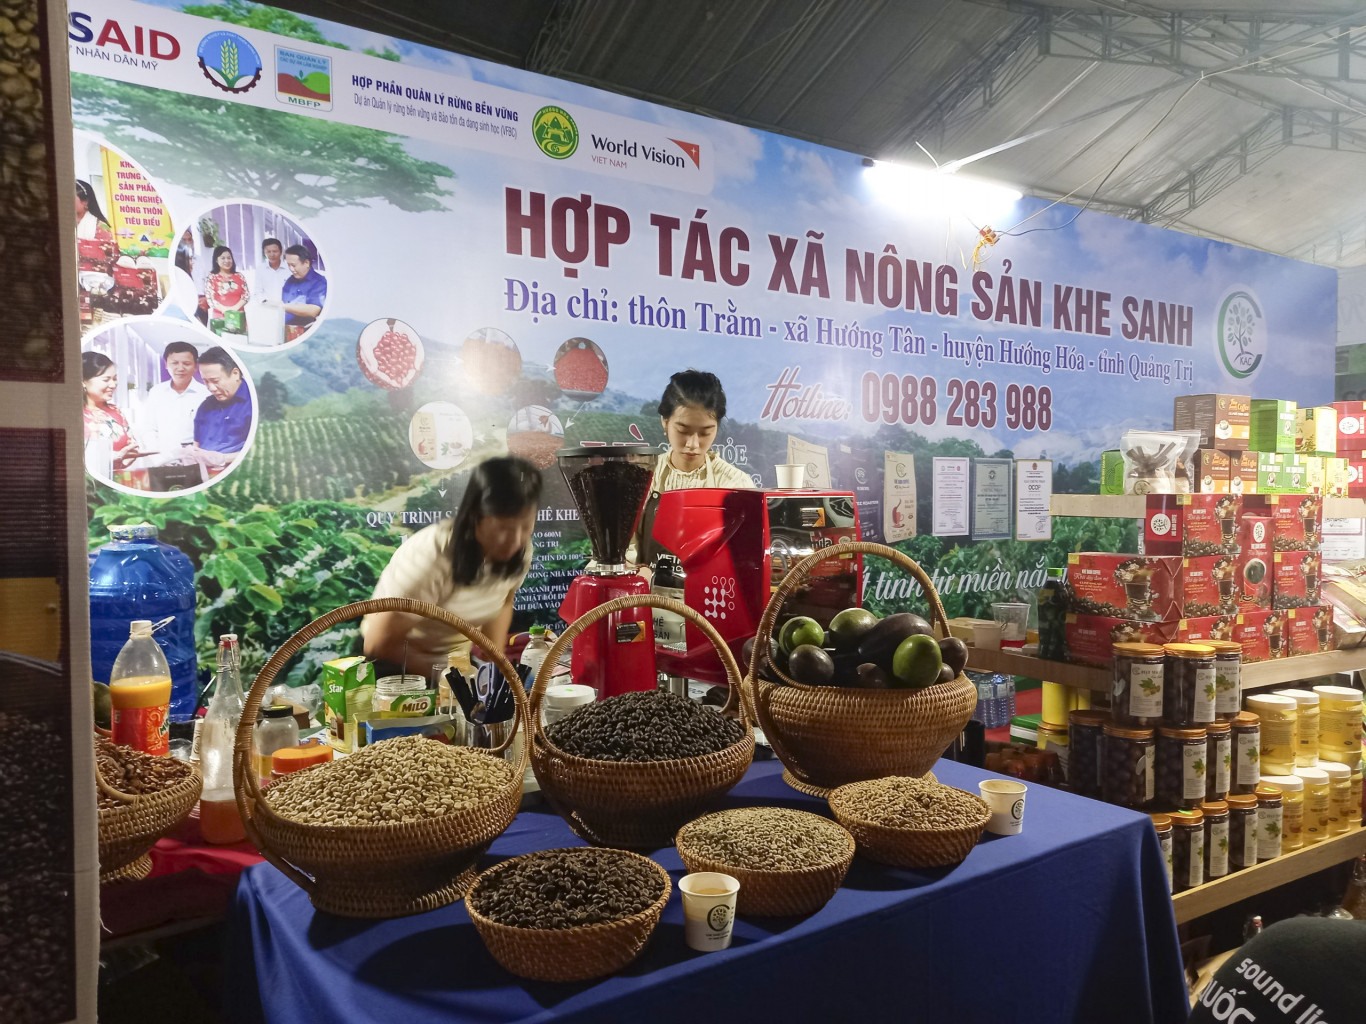 Hội chợ cũng là dịp để quảng bá các sản phẩm địa phương miền Tây Quảng Trị